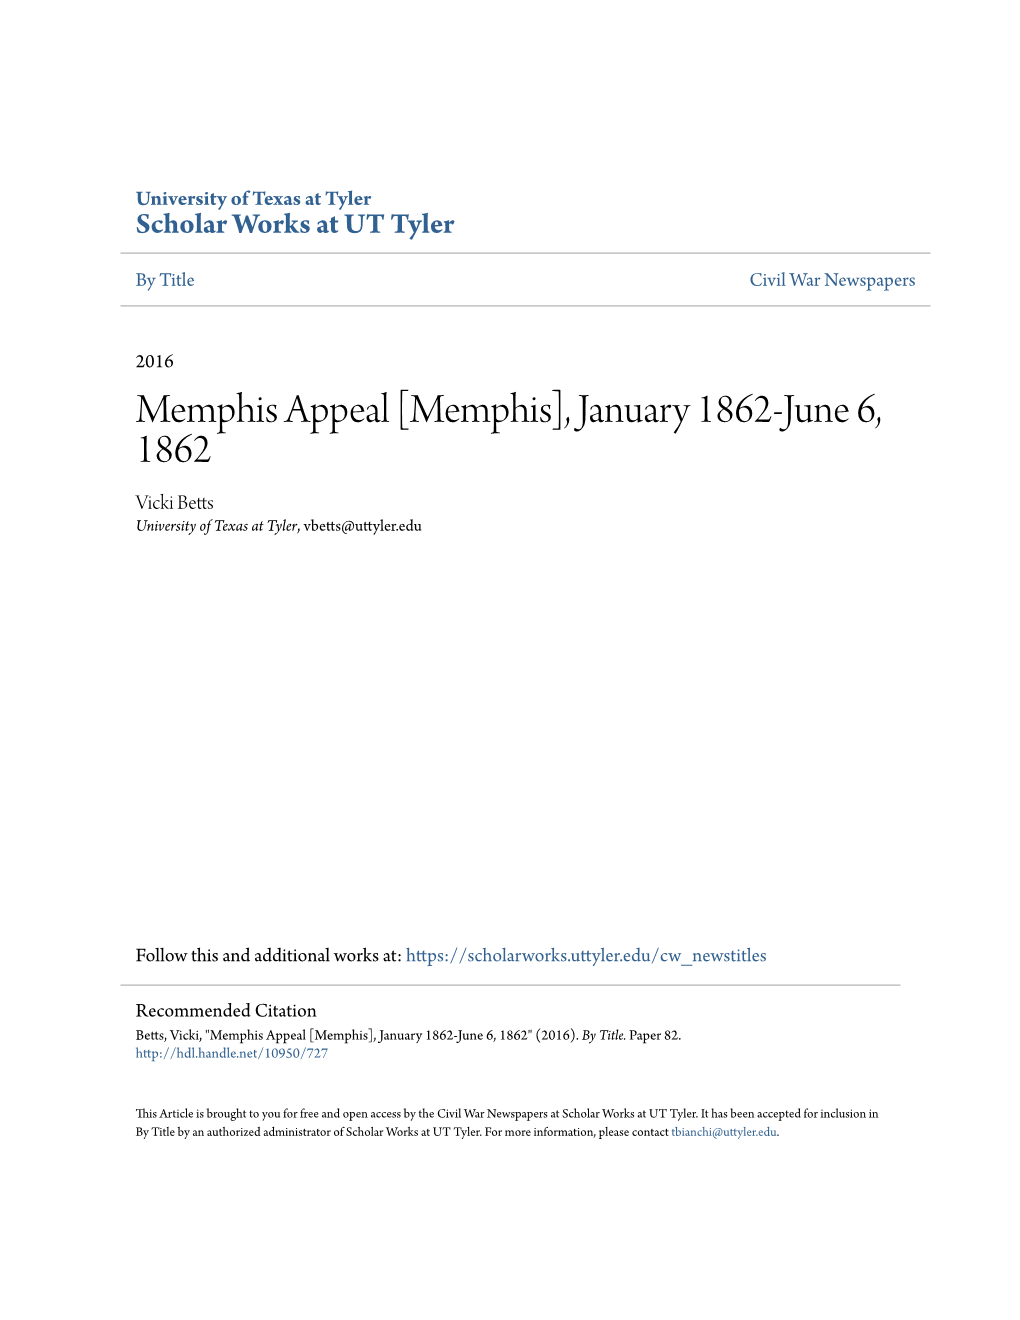 Memphis Appeal [Memphis], January 1862-June 6, 1862 Vicki Betts University of Texas at Tyler, Vbetts@Uttyler.Edu